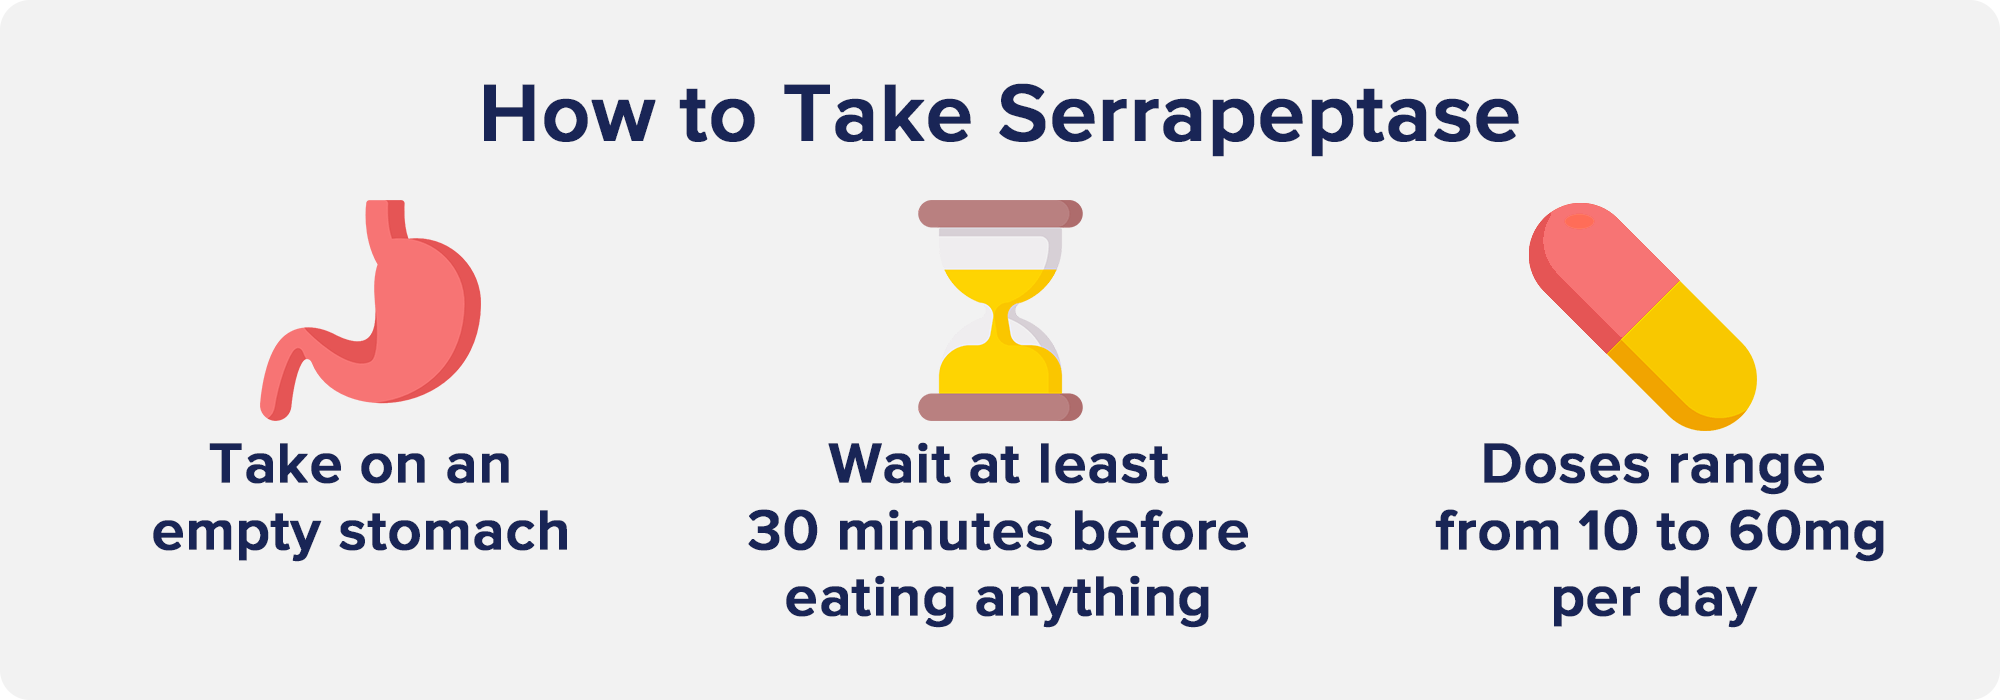 How to Take Serrapeptase